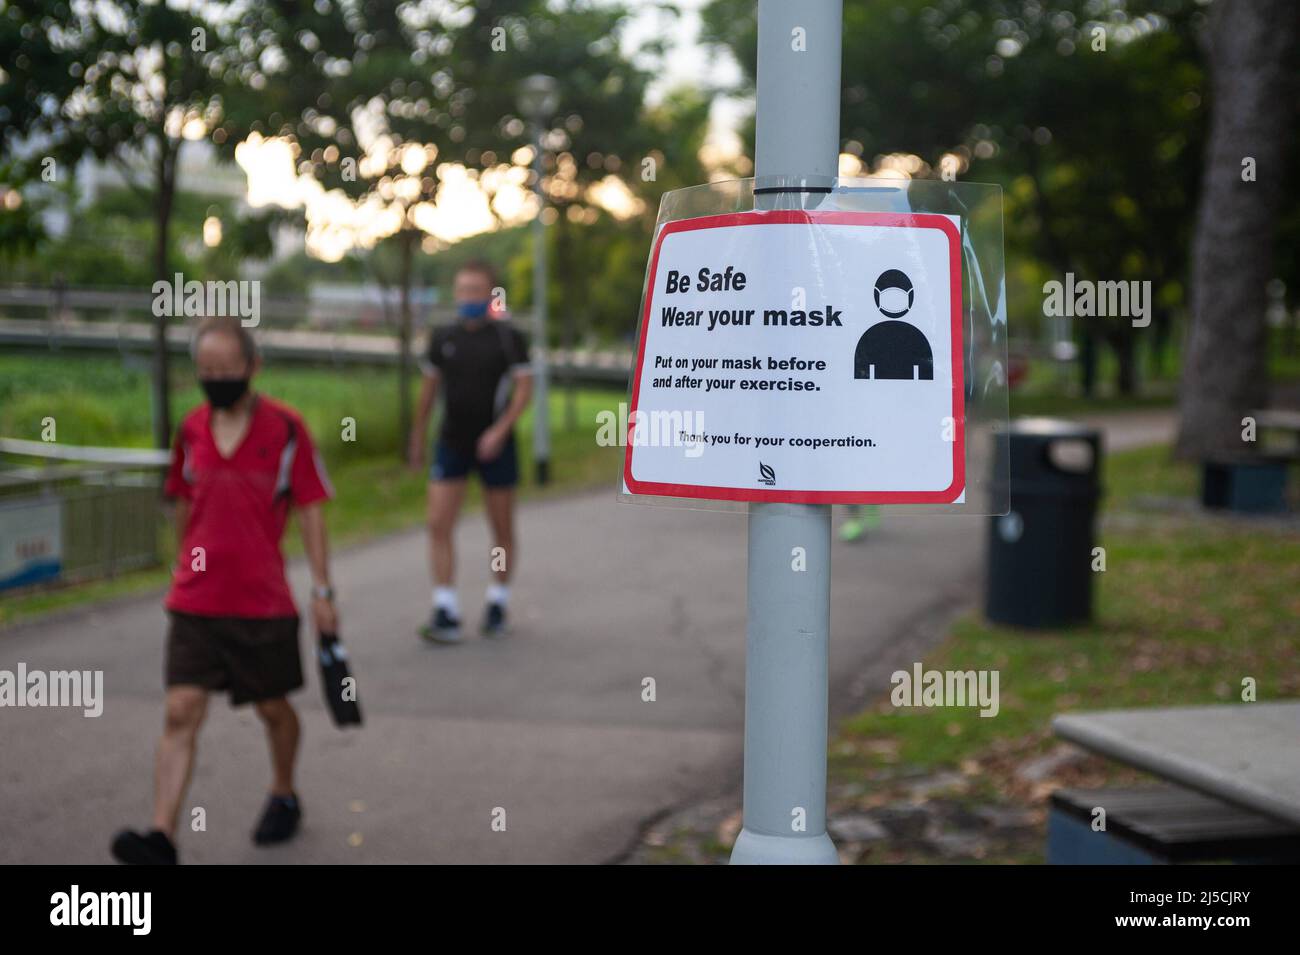 15 maggio 2020, Singapore, Repubblica di Singapore, Asia - Un uomo che  indossa una guardia del boccaglio cammina oltre un cartello su Covid-19 nel  Parco Bishan-Ang Mo Kio, che mette in evidenza